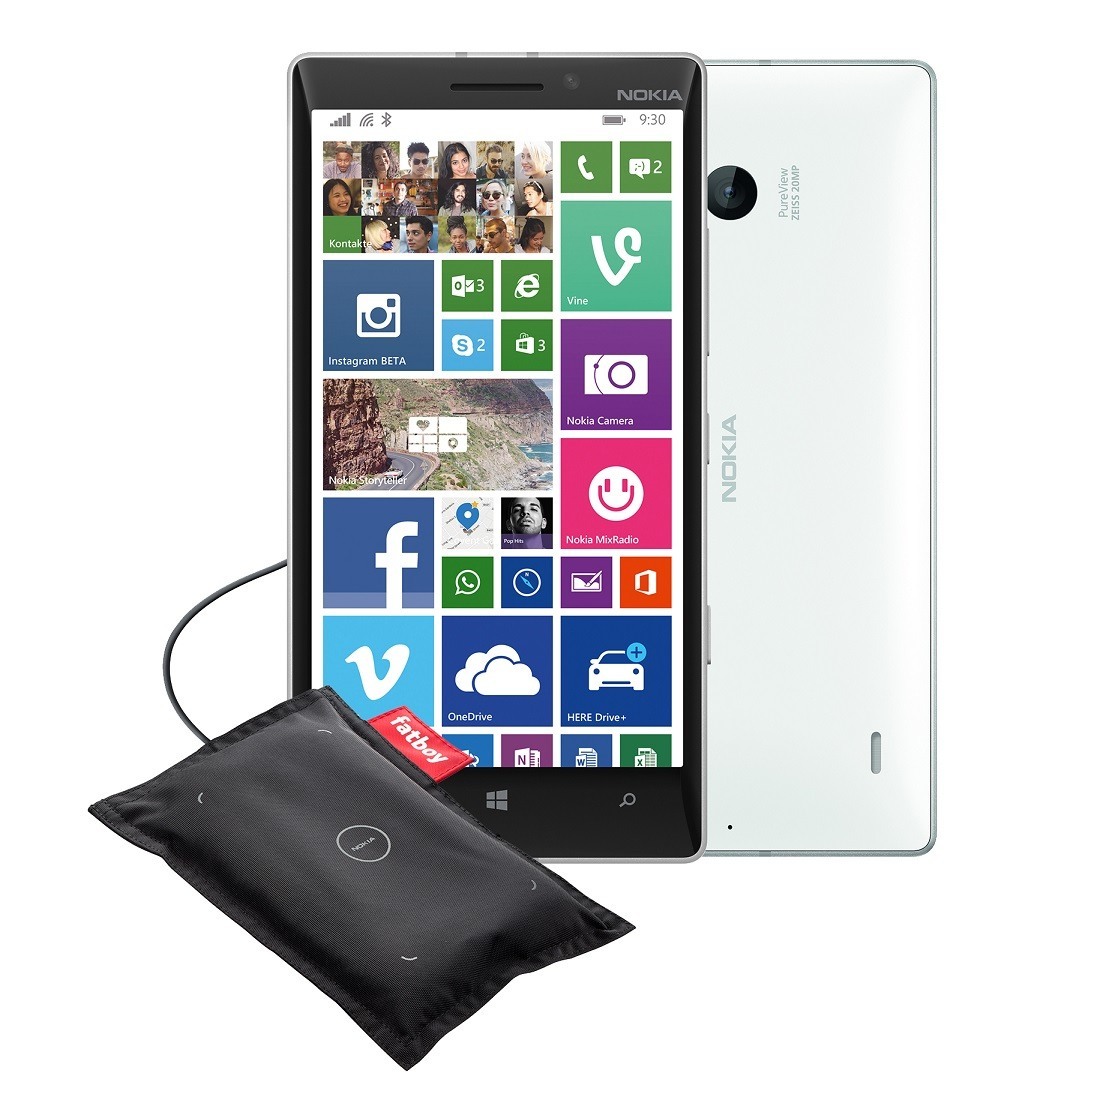 Deal: Lumia 930 inkl. Fatboy Ladekissen für 359 Euro (ab 16 Uhr)